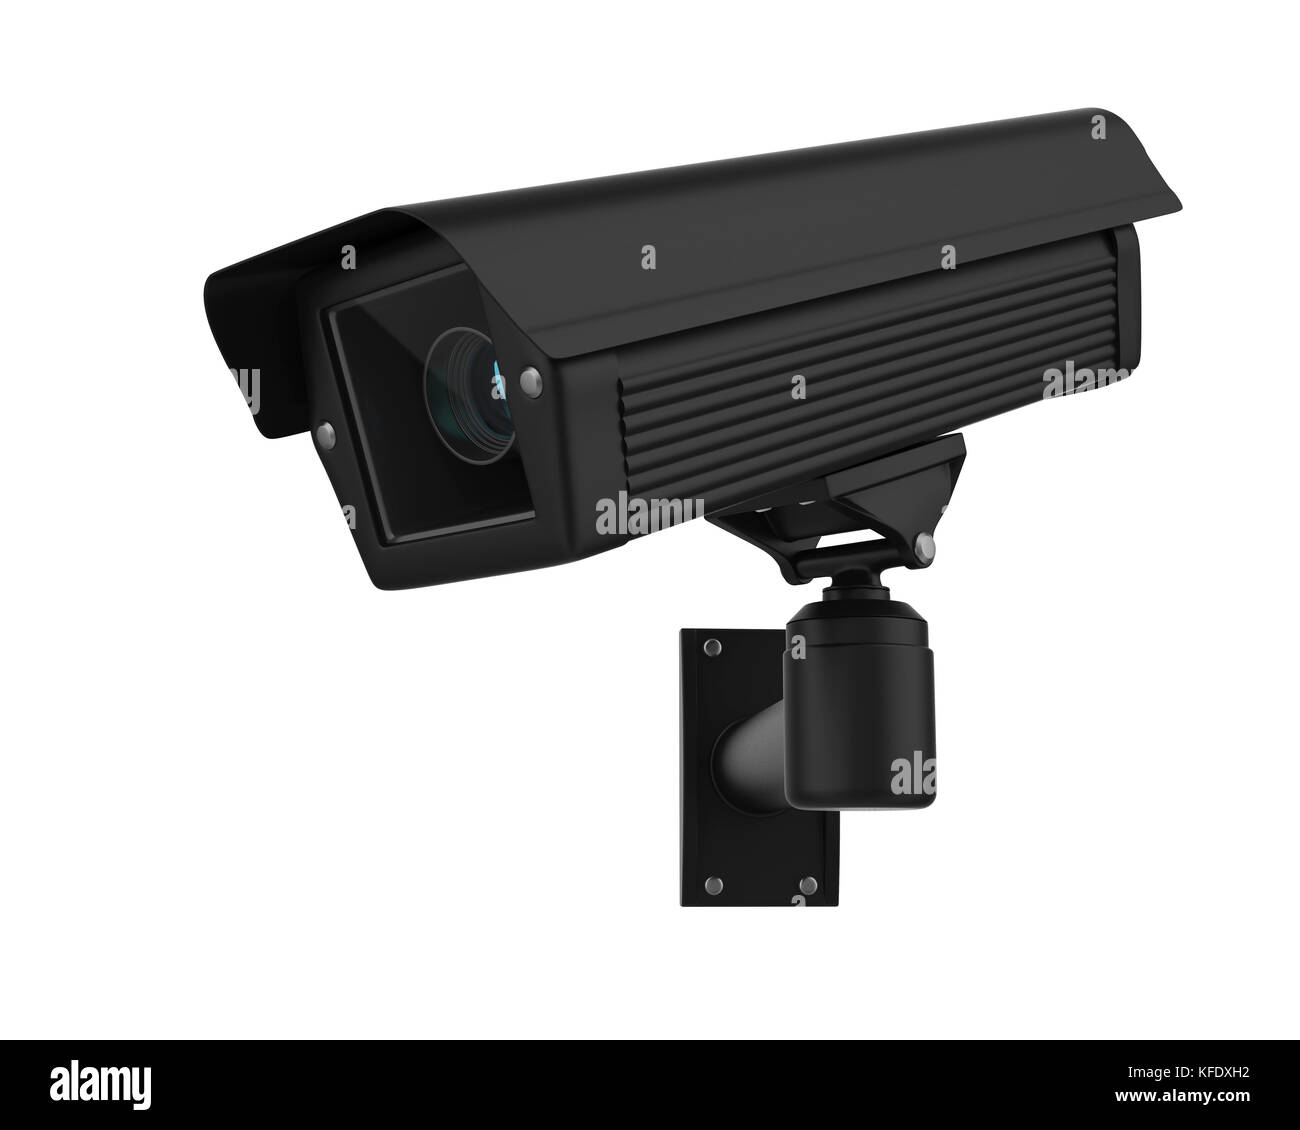 Caméra de sécurité cctv surveillance isolée Banque D'Images